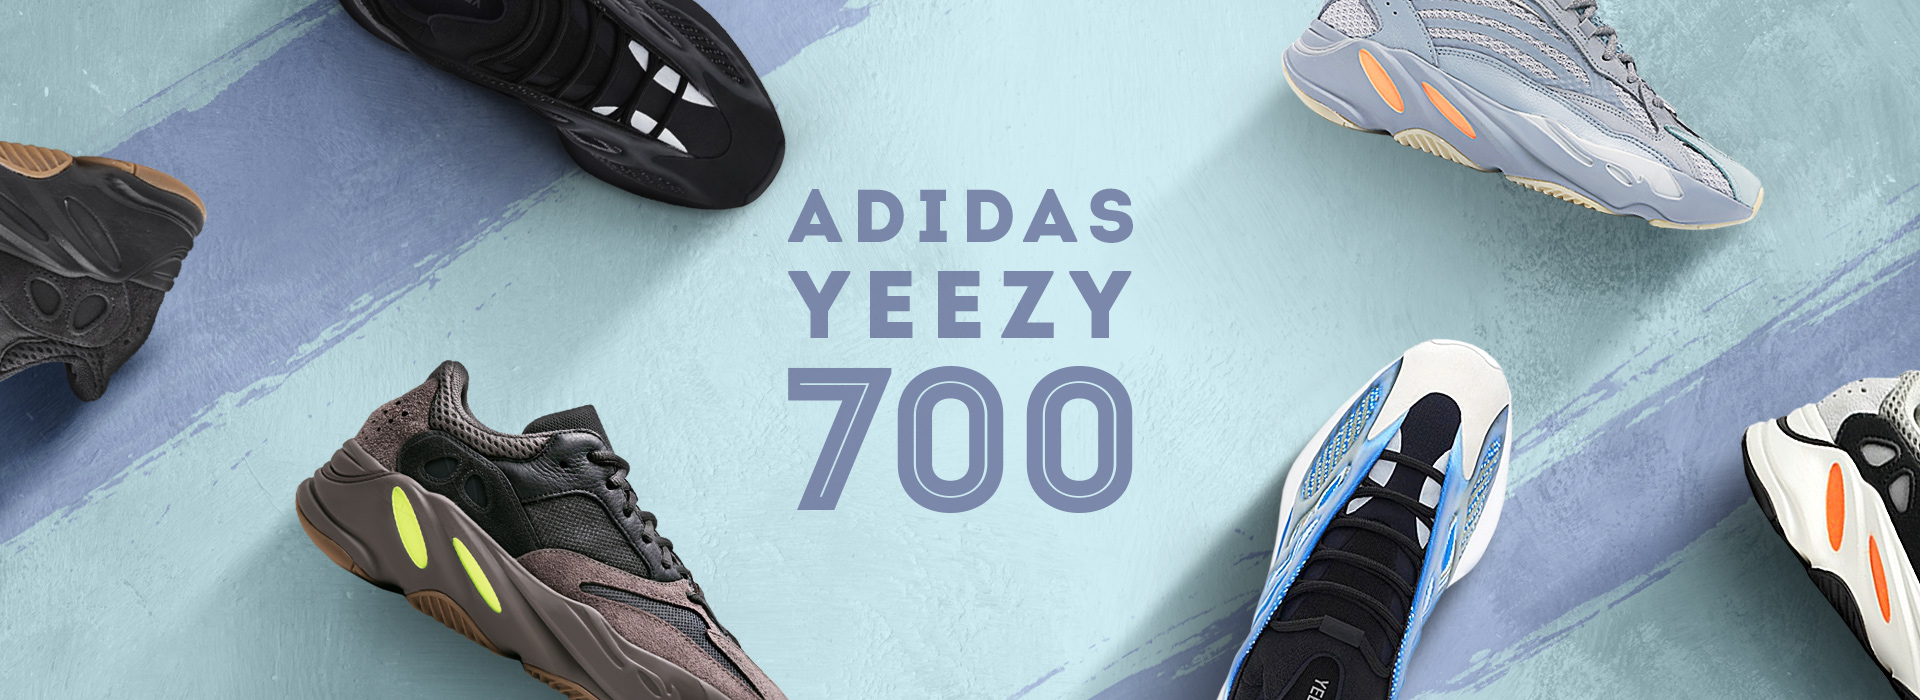 Adidas Yeezy 700